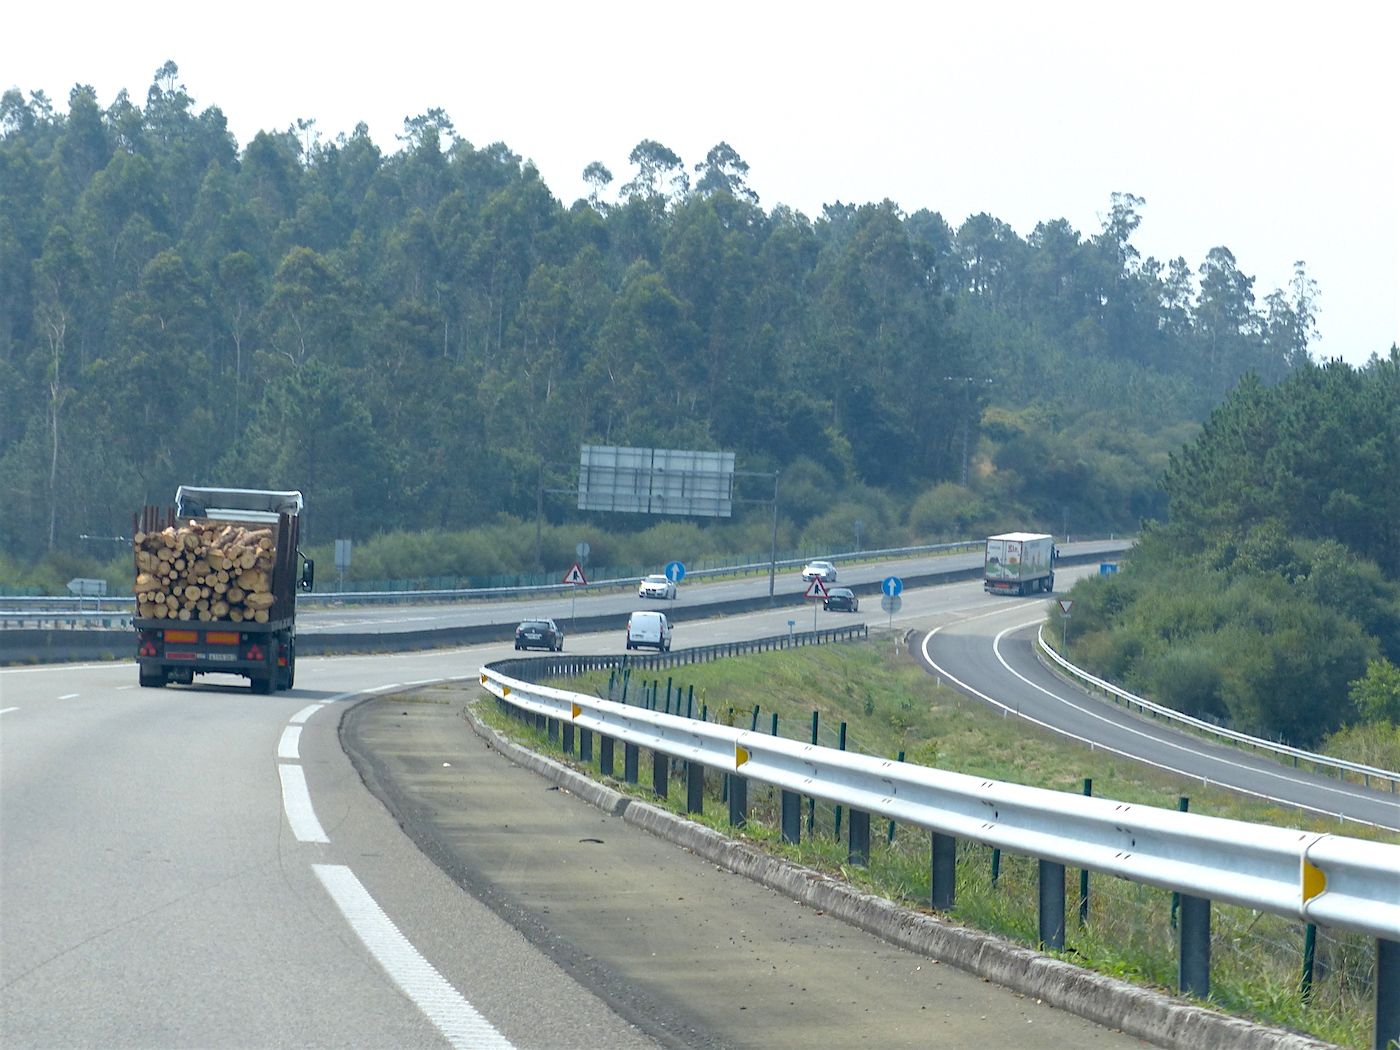 transporte-carretera-galicia-madera-camion